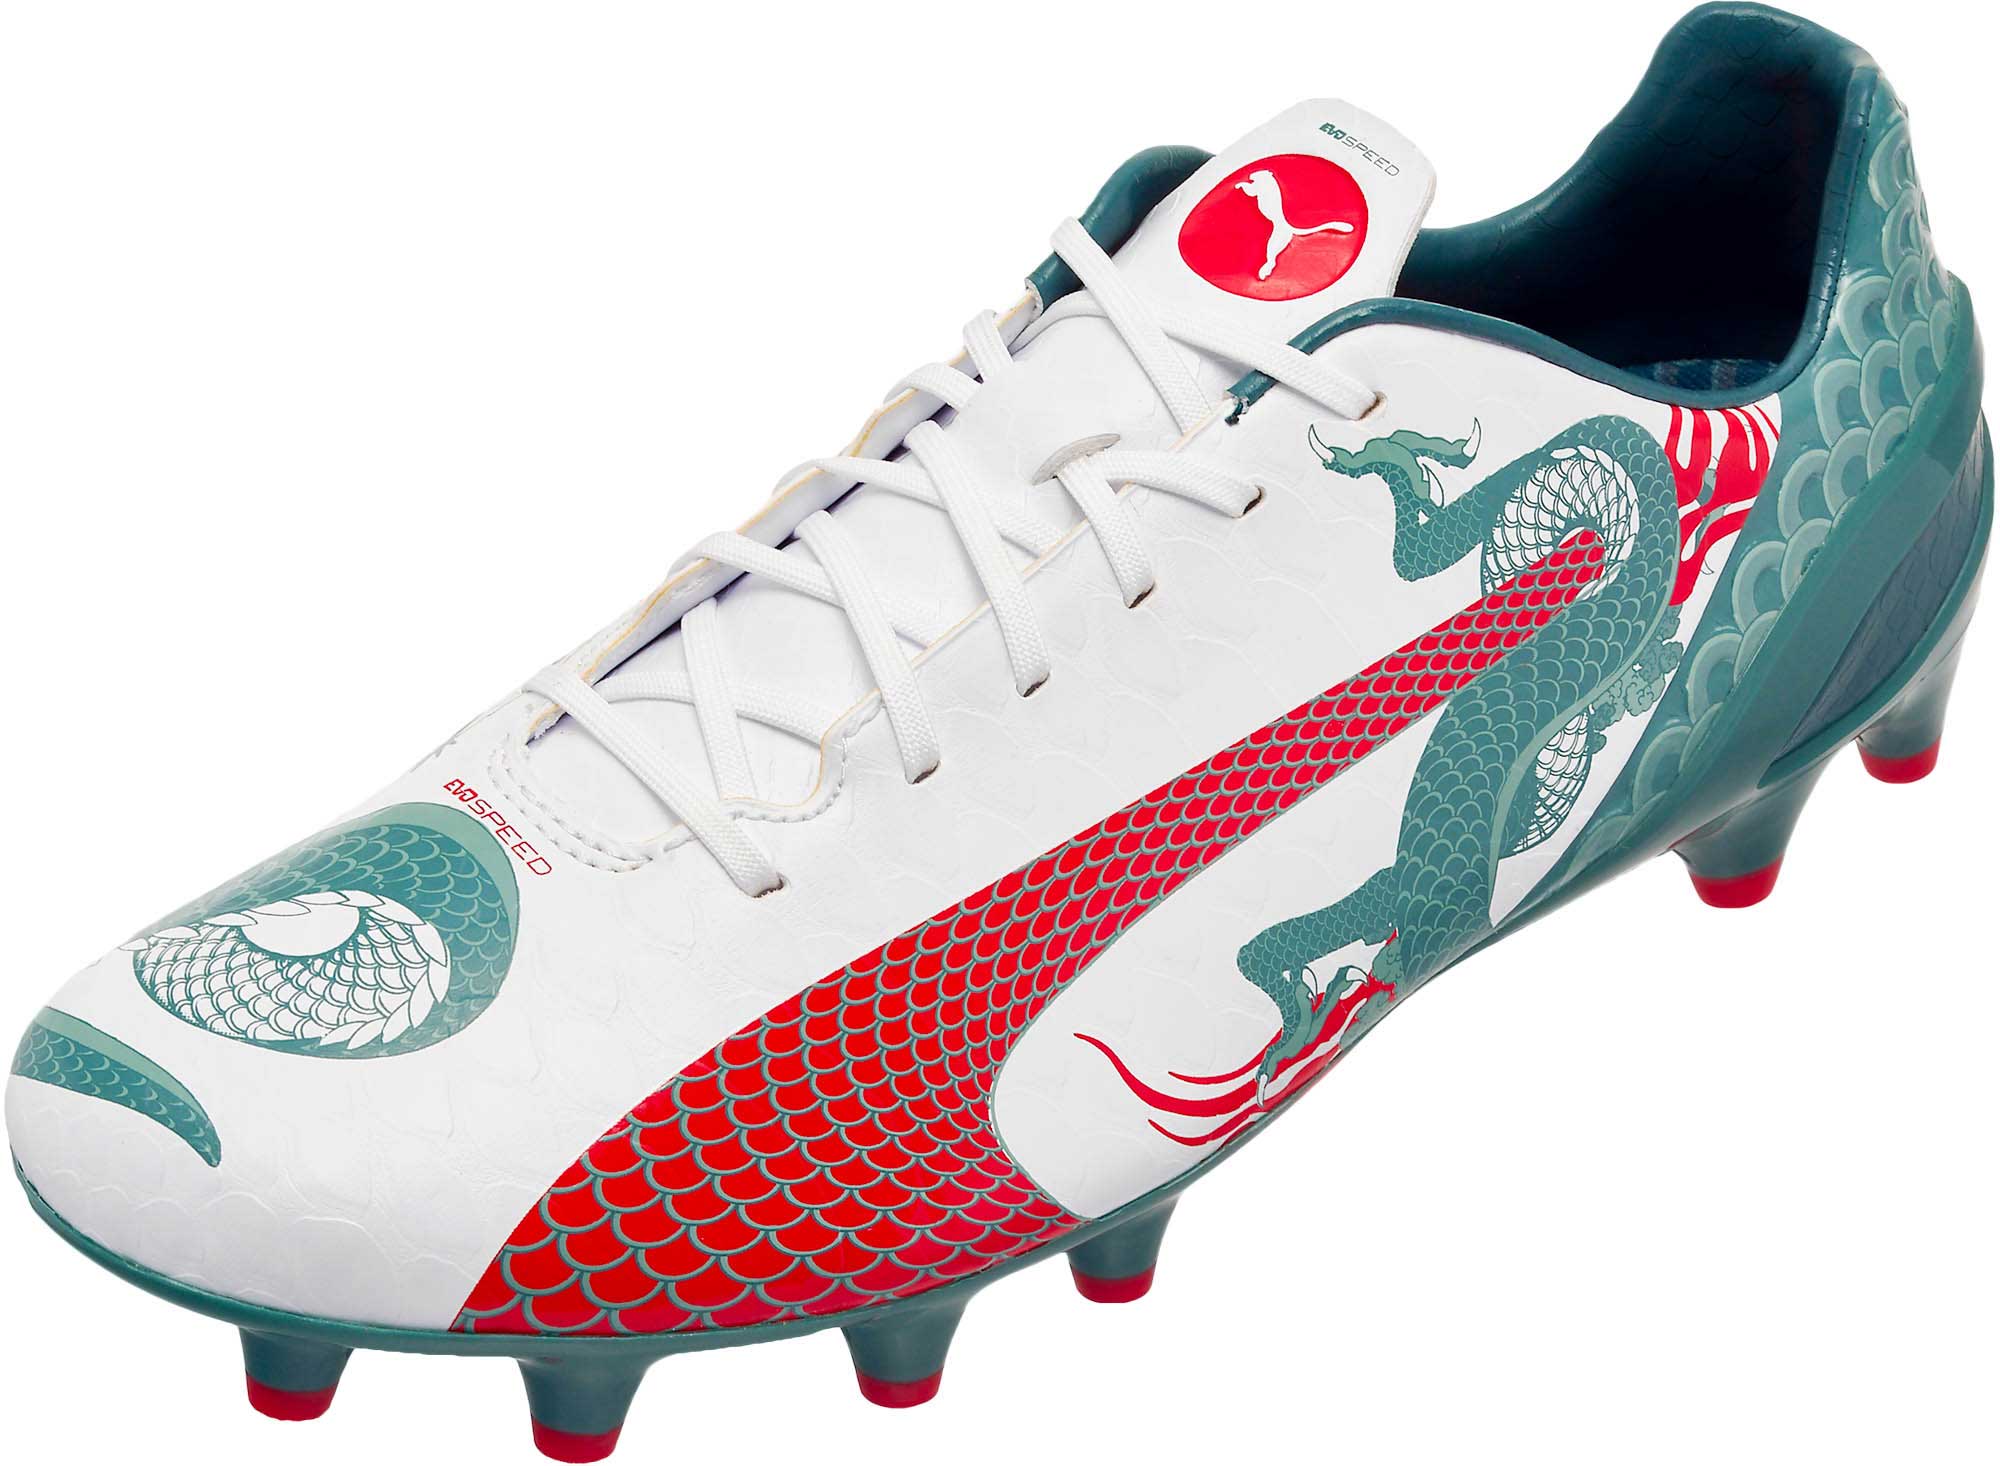 puma soccer shoes evospeed